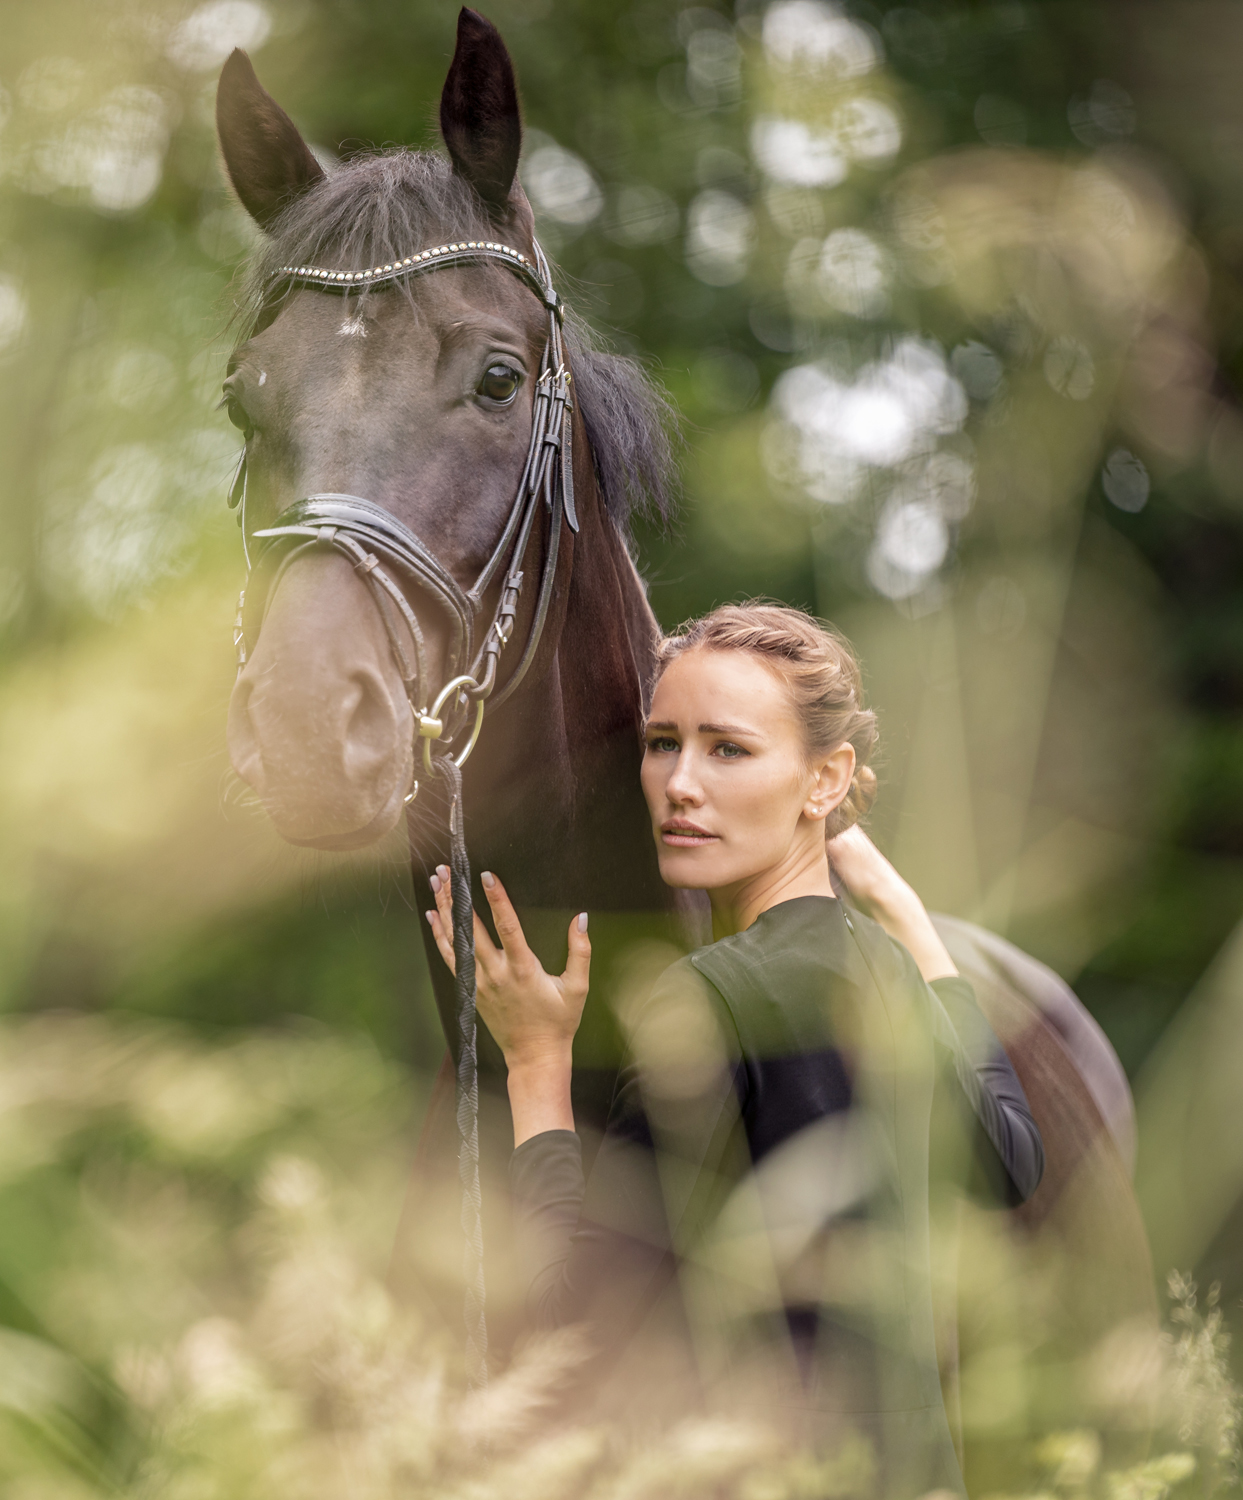 Model Jo mit ihre Pferden - emotionale Portraits und mehr